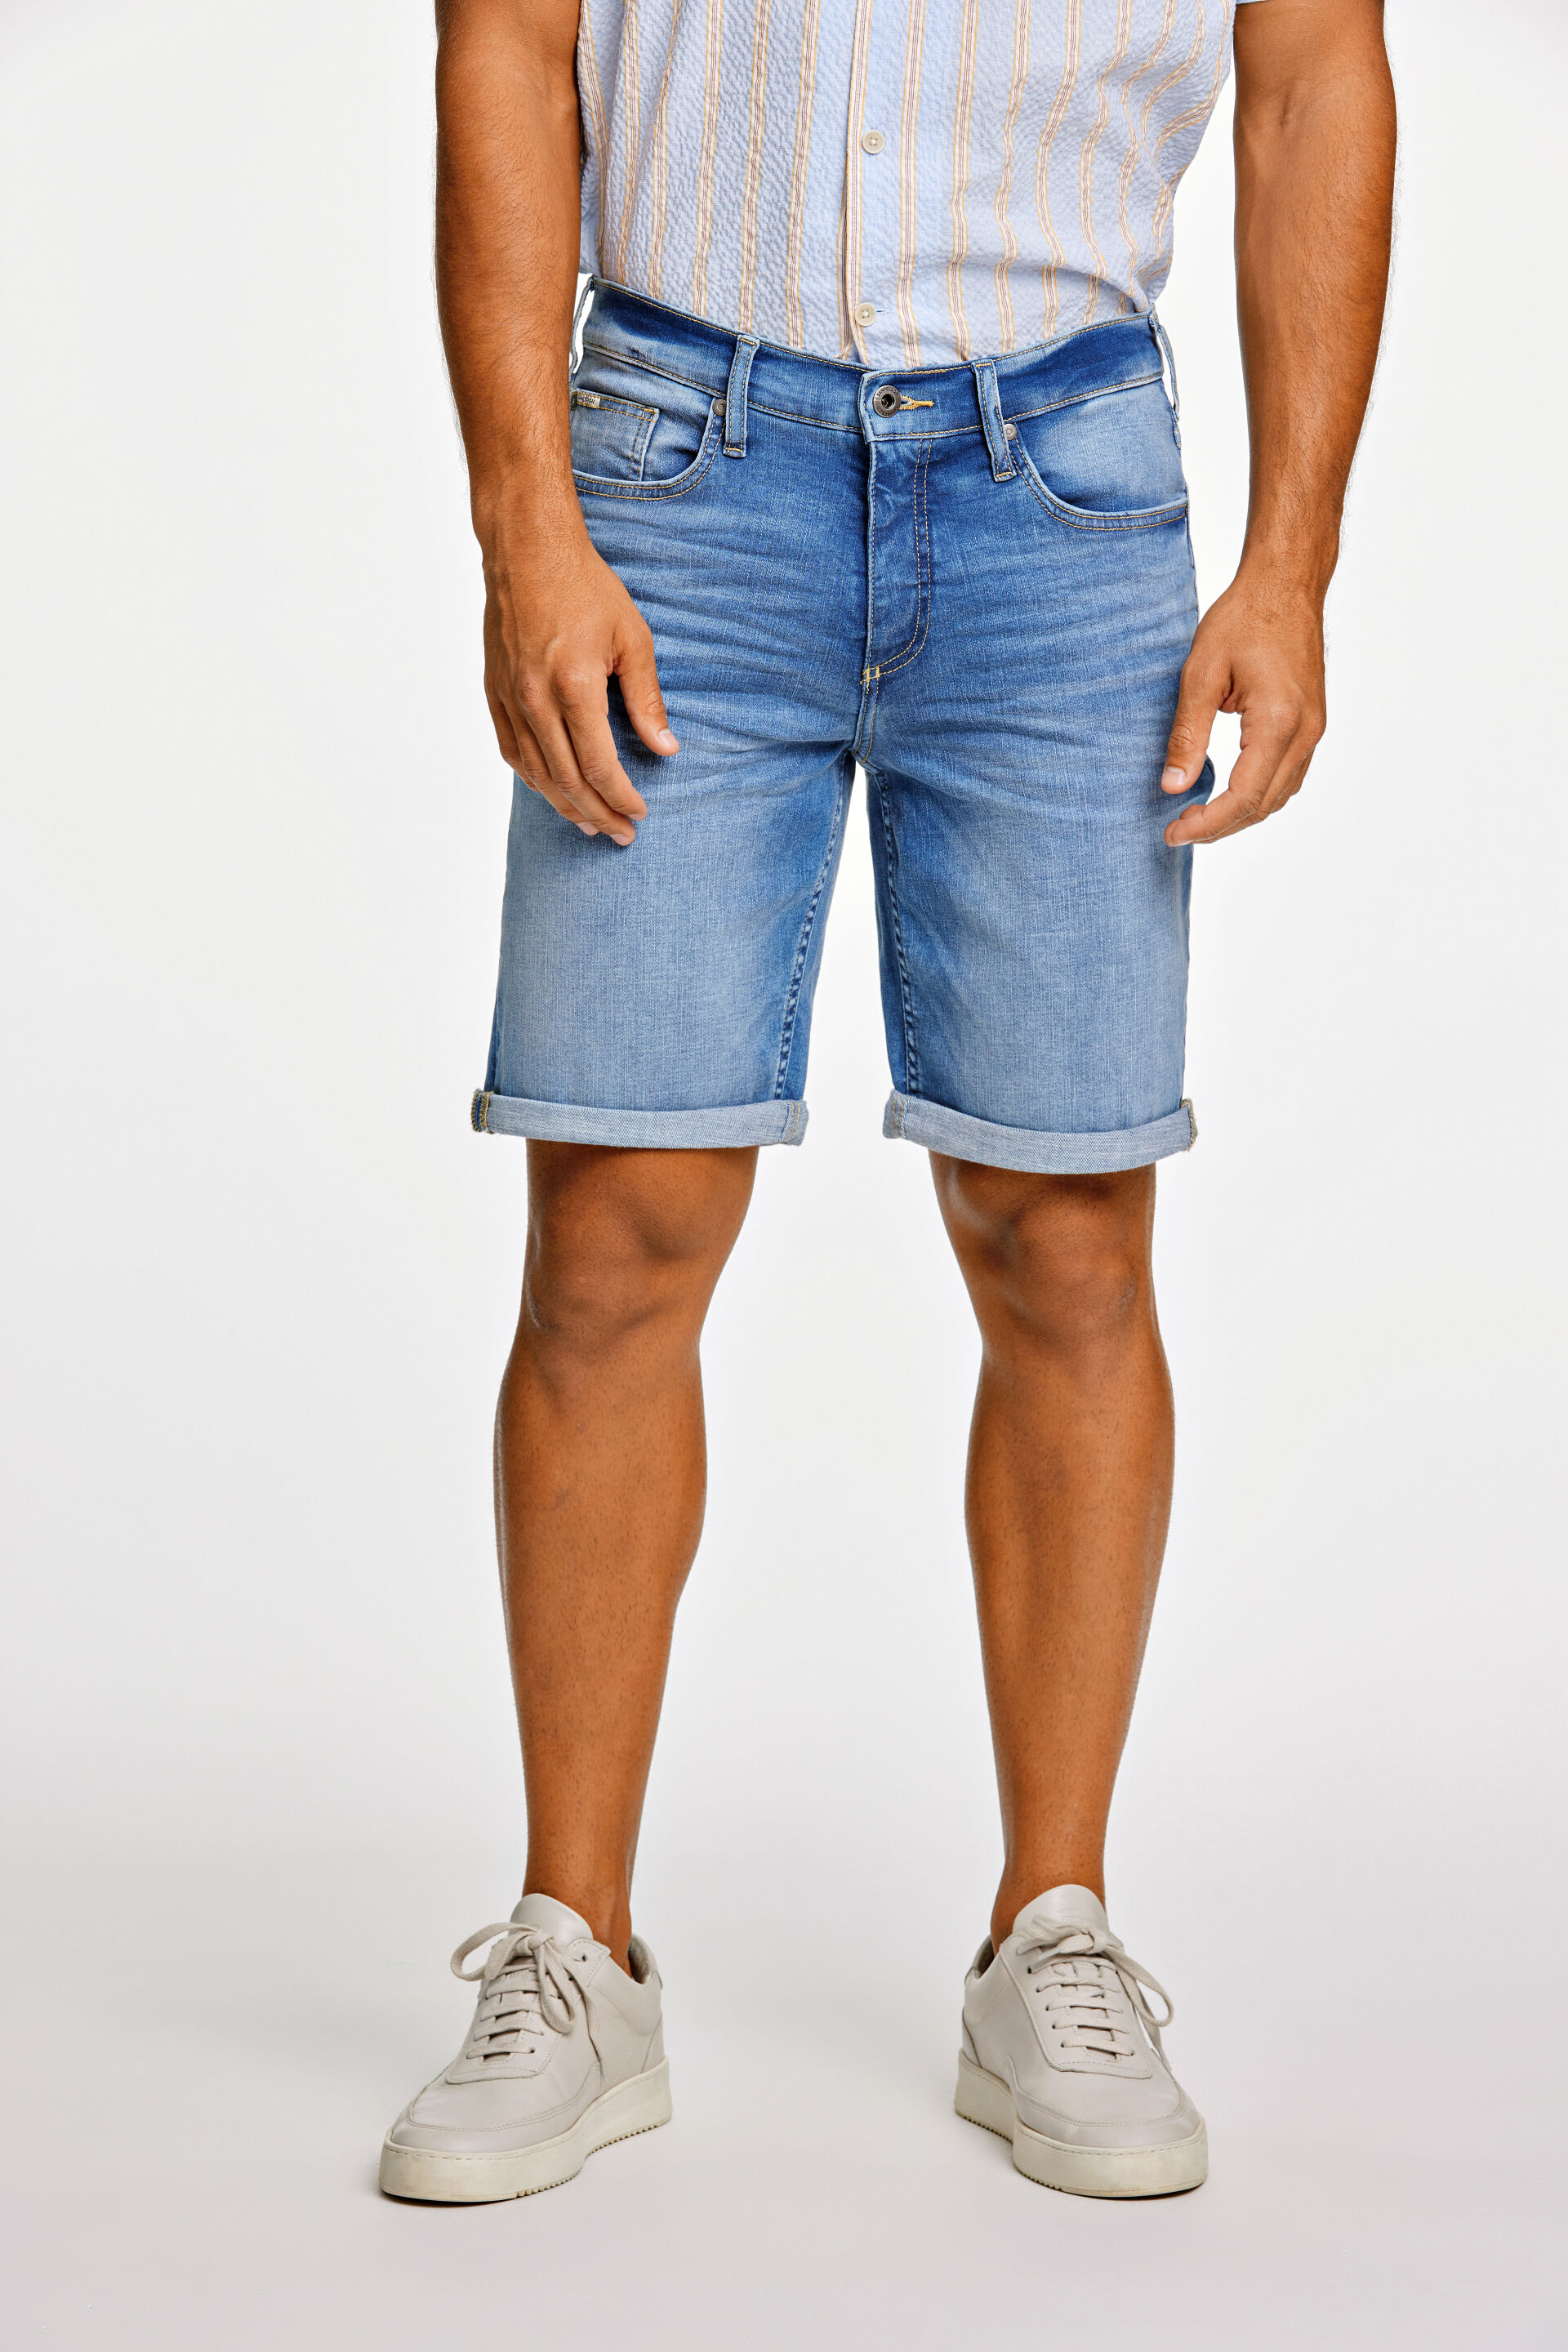 Jeans-Shorts Jeans-Shorts Blau 30-550002RIB